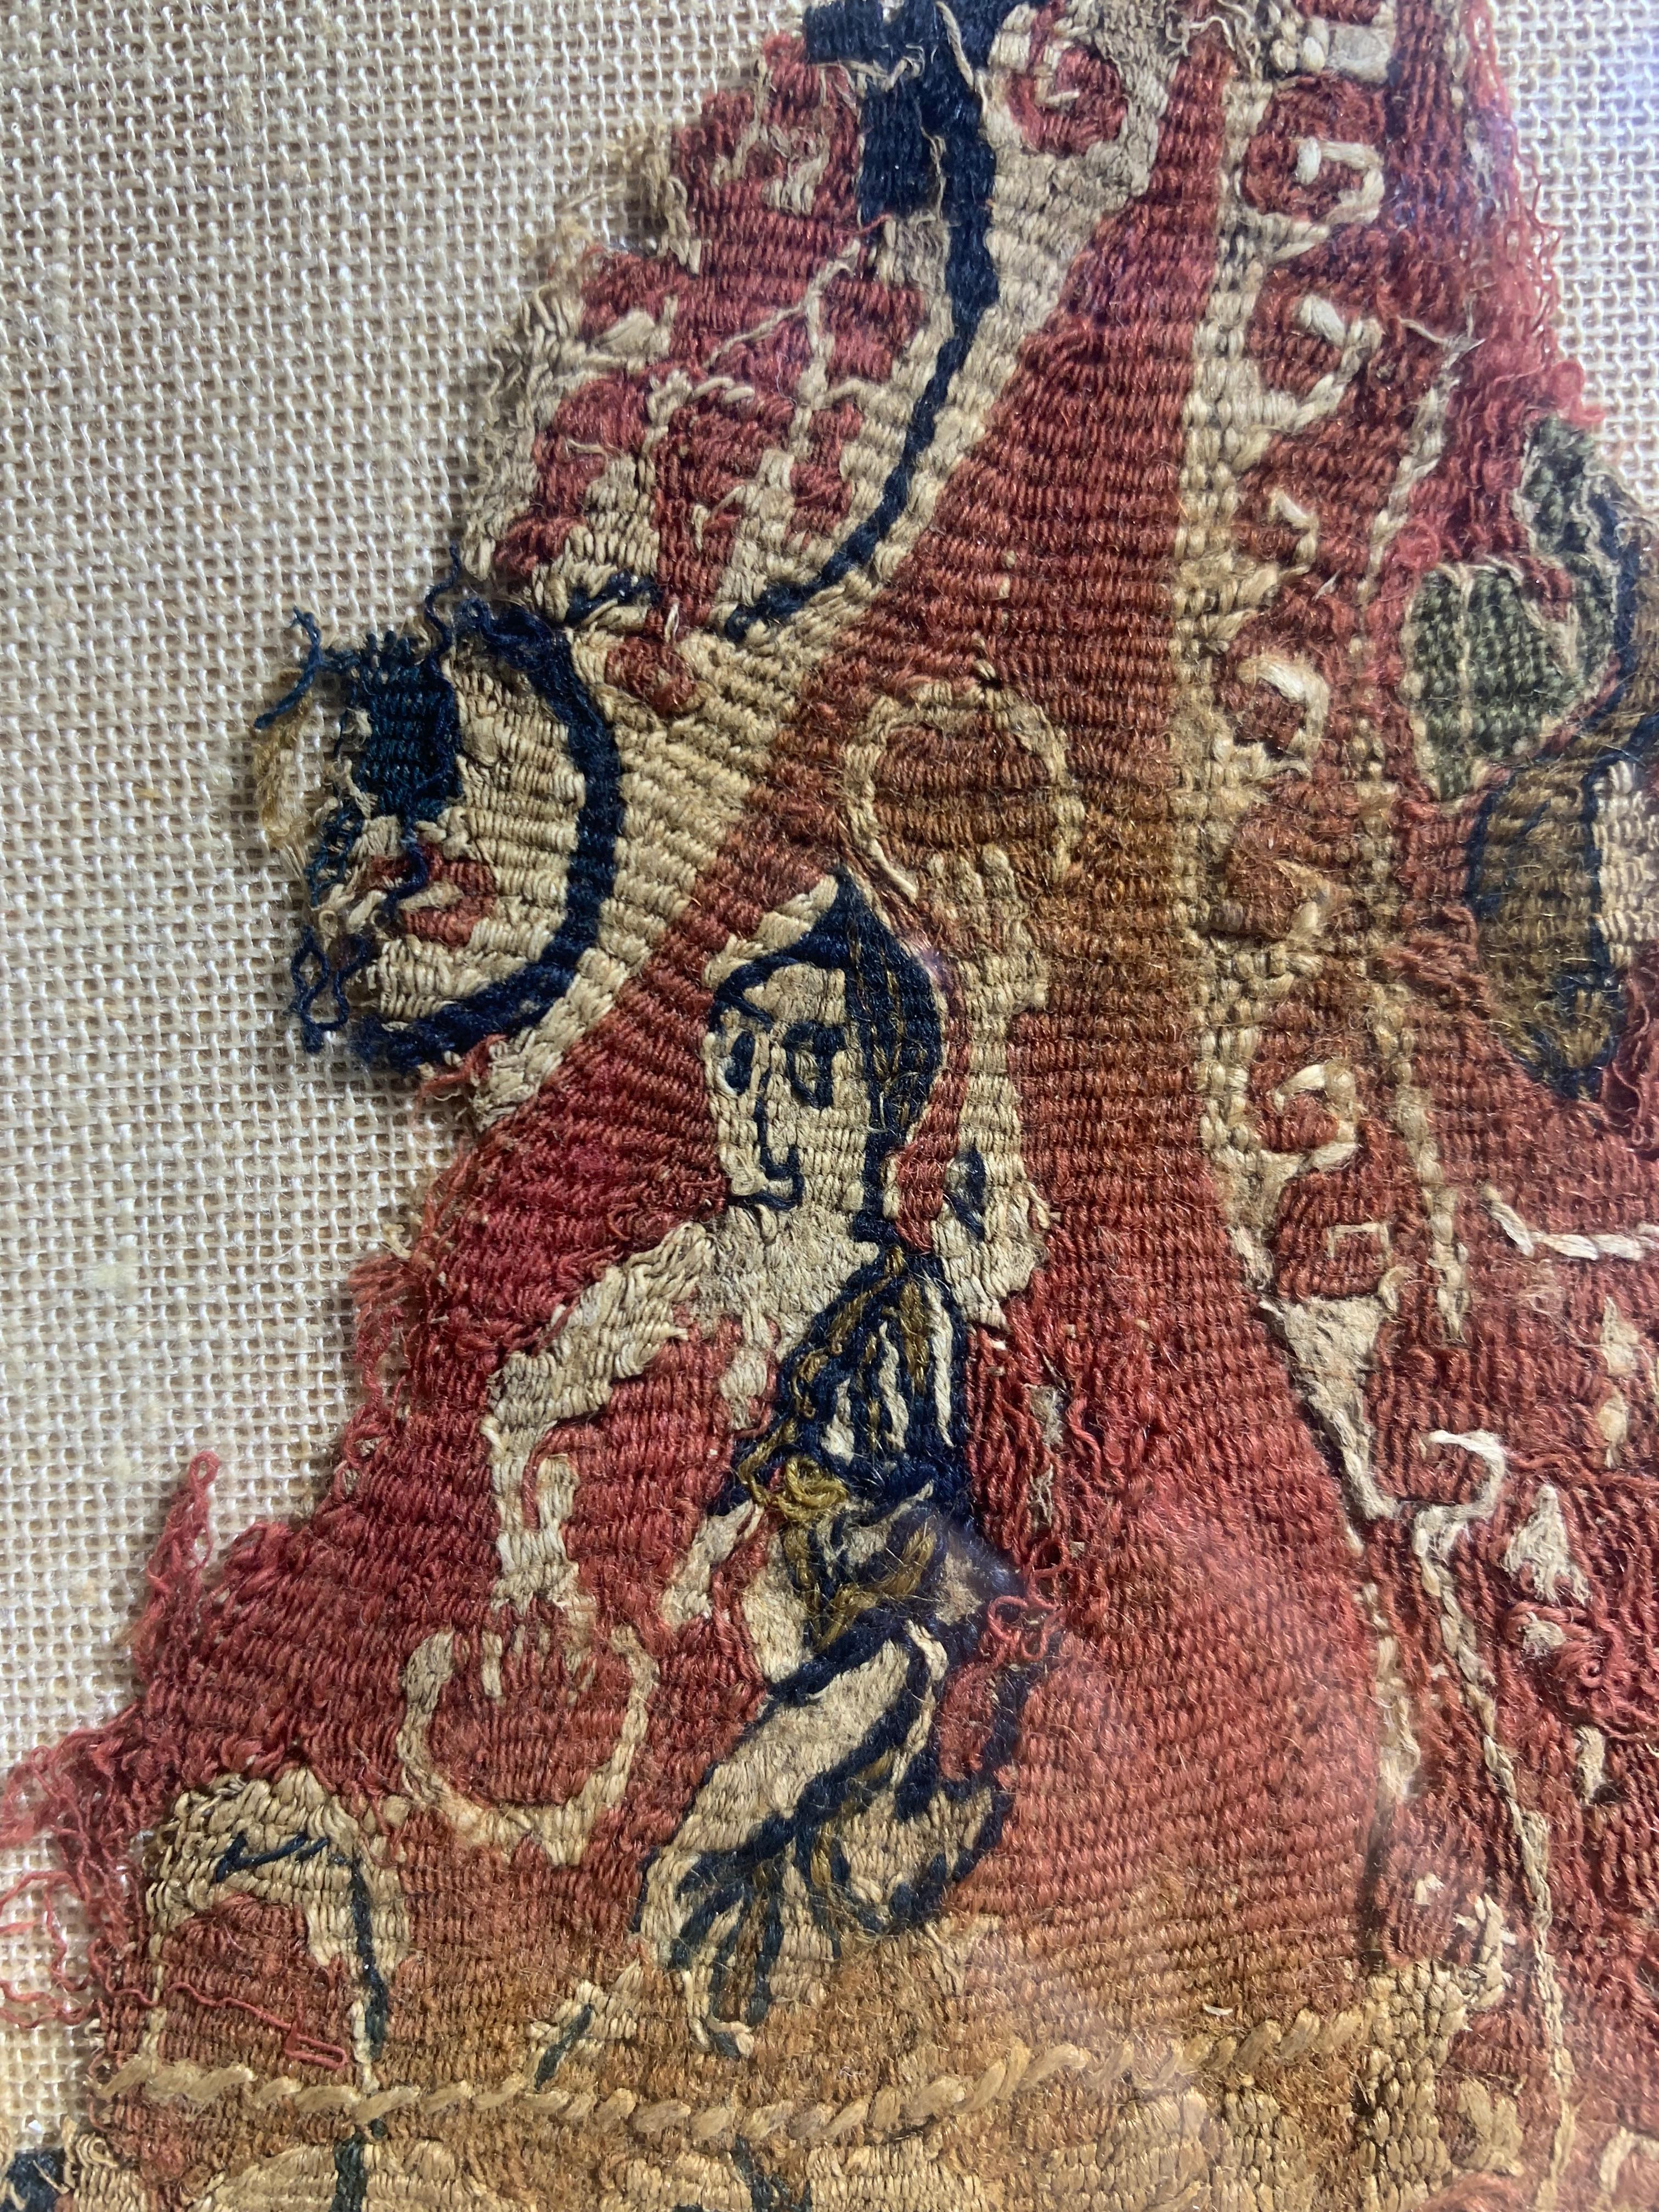 Ensemble de restes de tissus coptes en coton égyptien datant du 8e ou 9e siècle A.C. Elles ont été trouvées lors de travaux d'excavation au 19e siècle. Les tissus sont peints à la main. Ils sont en très bon état. Il s'agit de restes provenant de